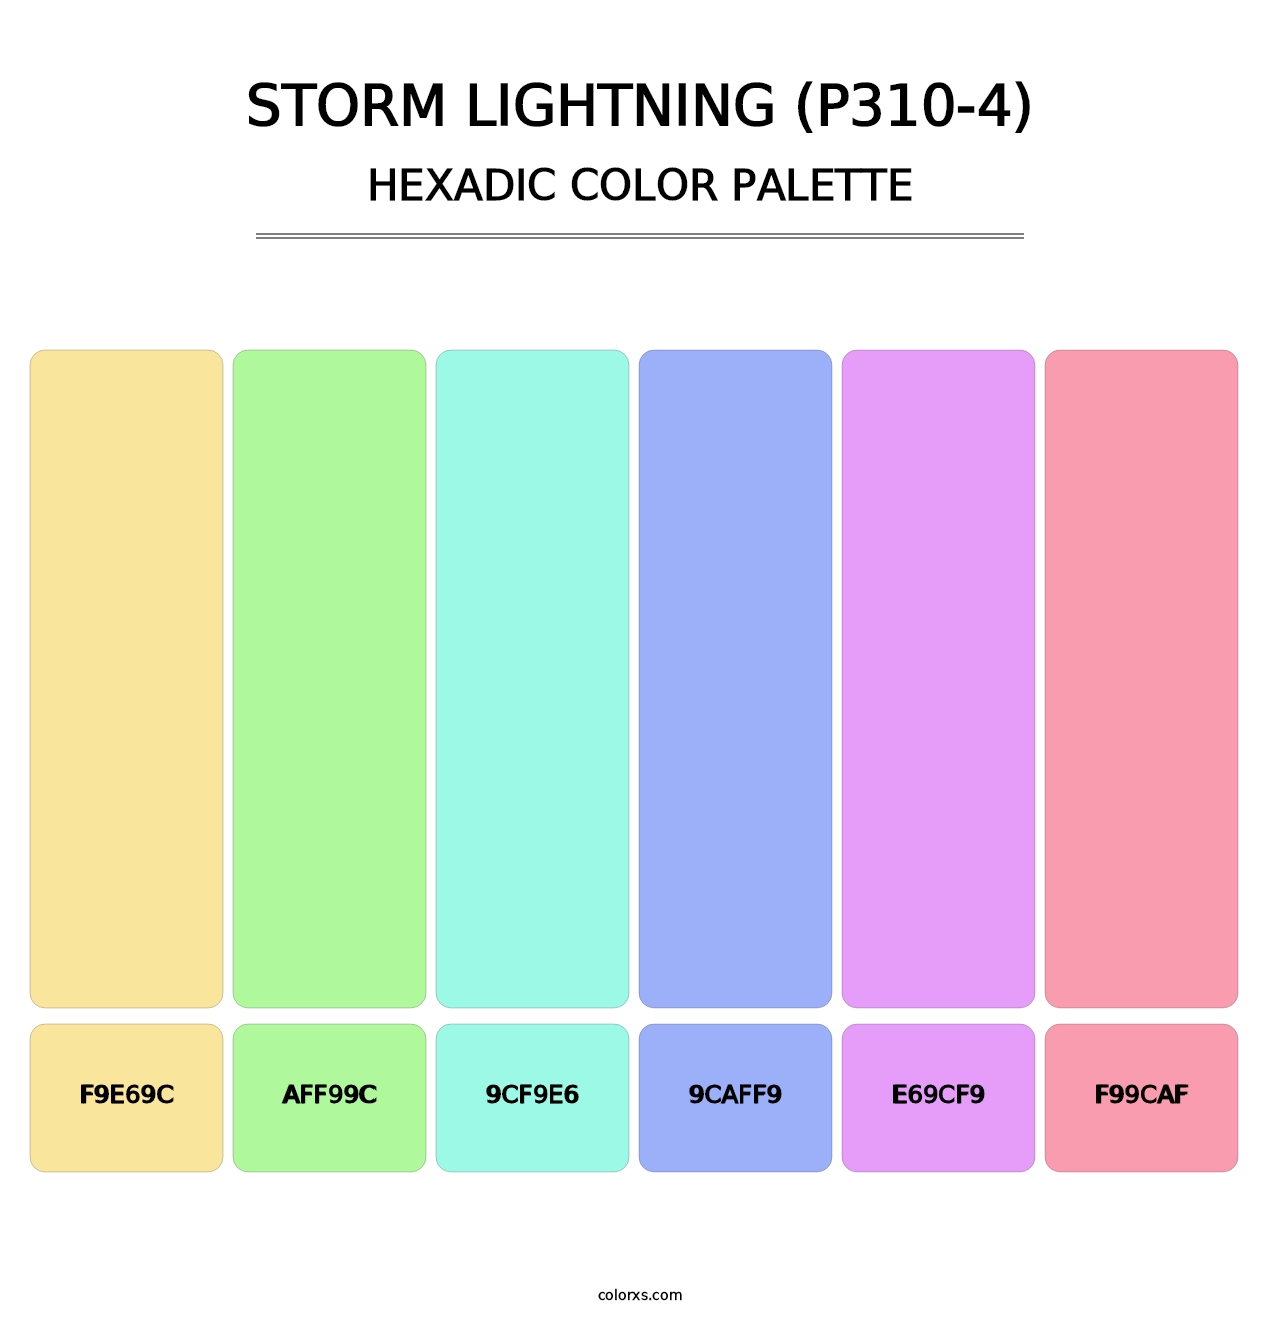 Storm Lightning (P310-4) - Hexadic Color Palette